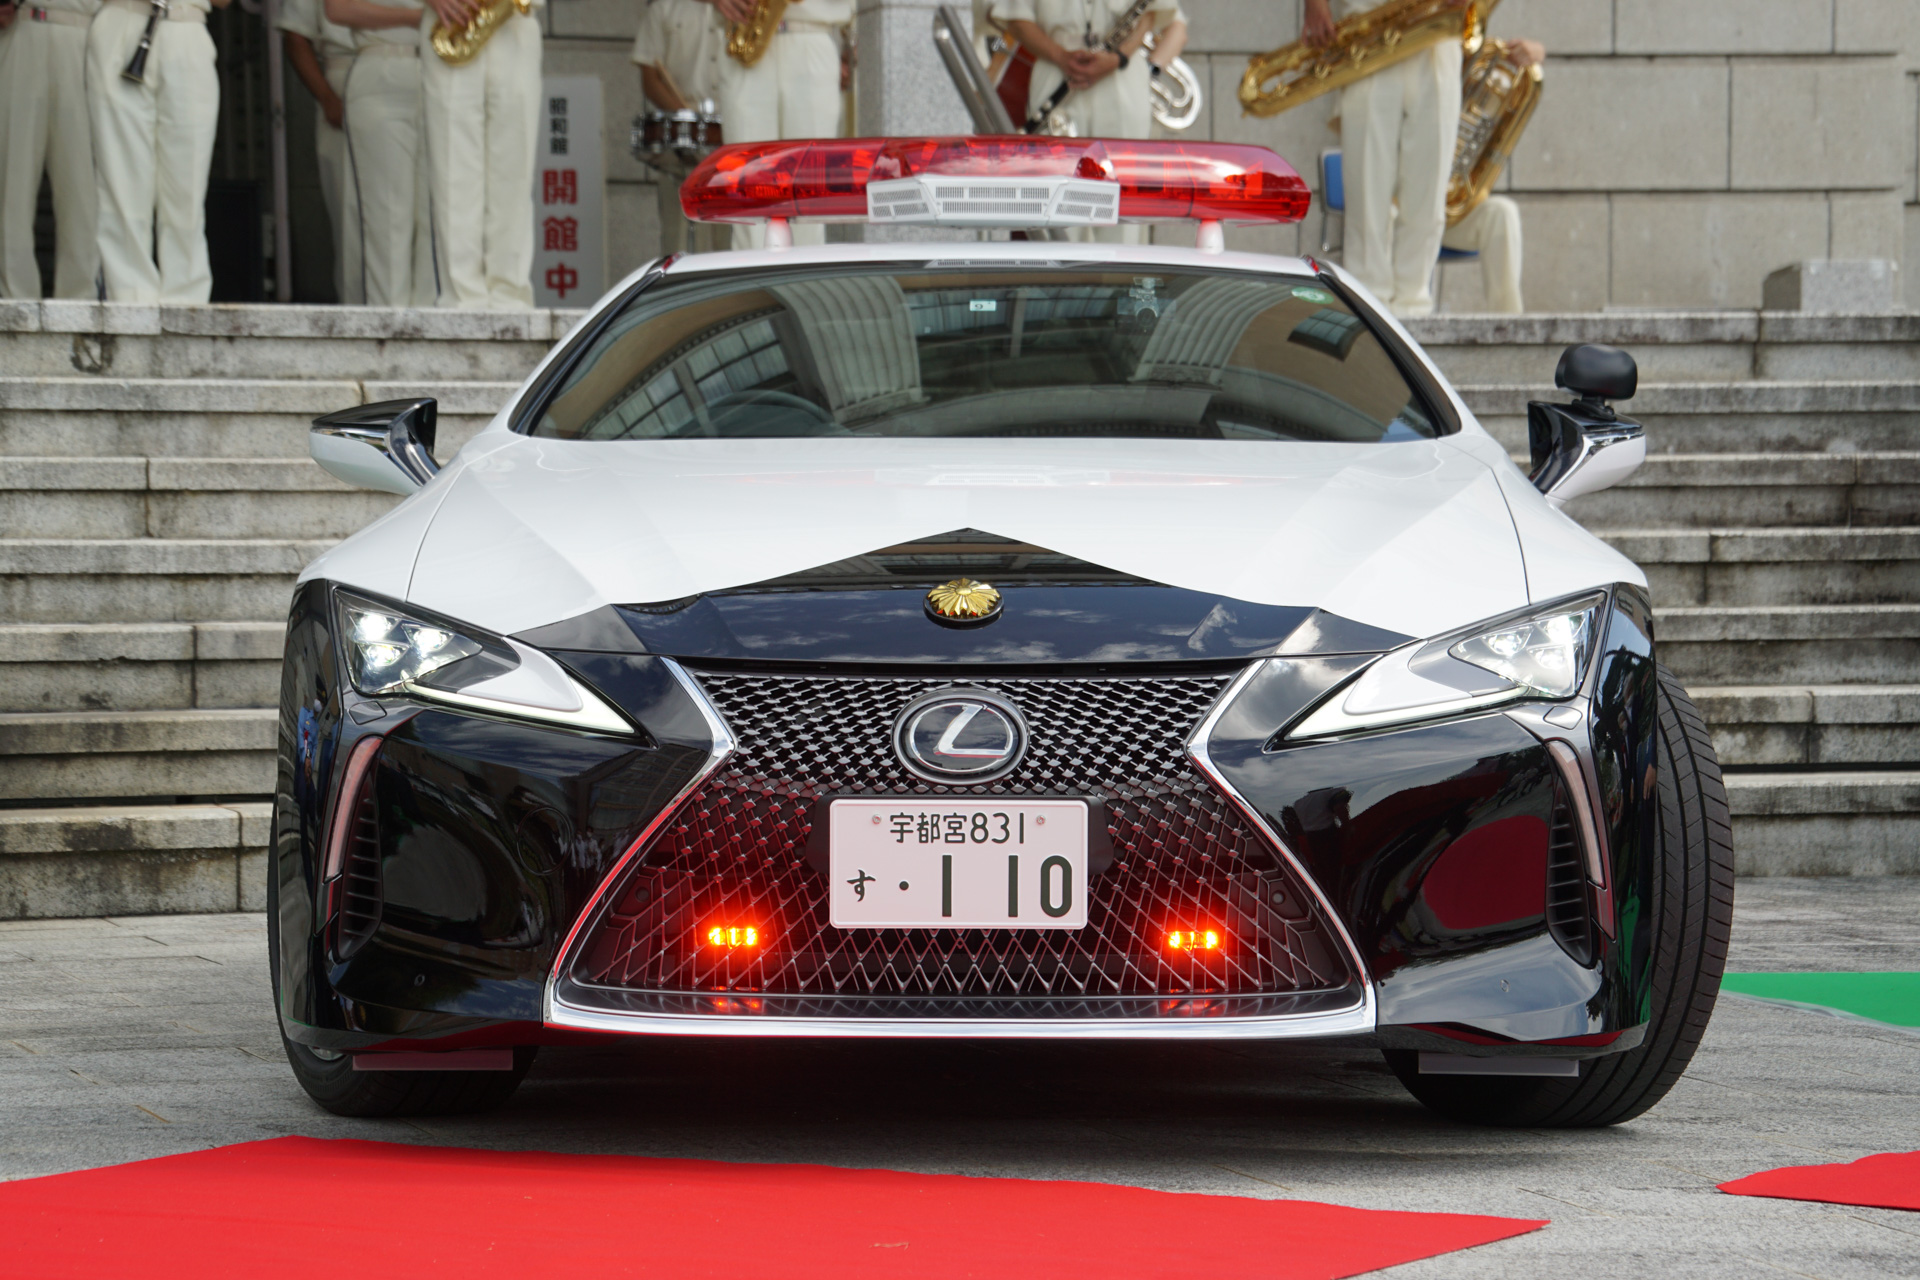 栃木県警察 レクサスlcパトカー 初公開 1740万円の高級クーペを県民が寄贈 Car Watch